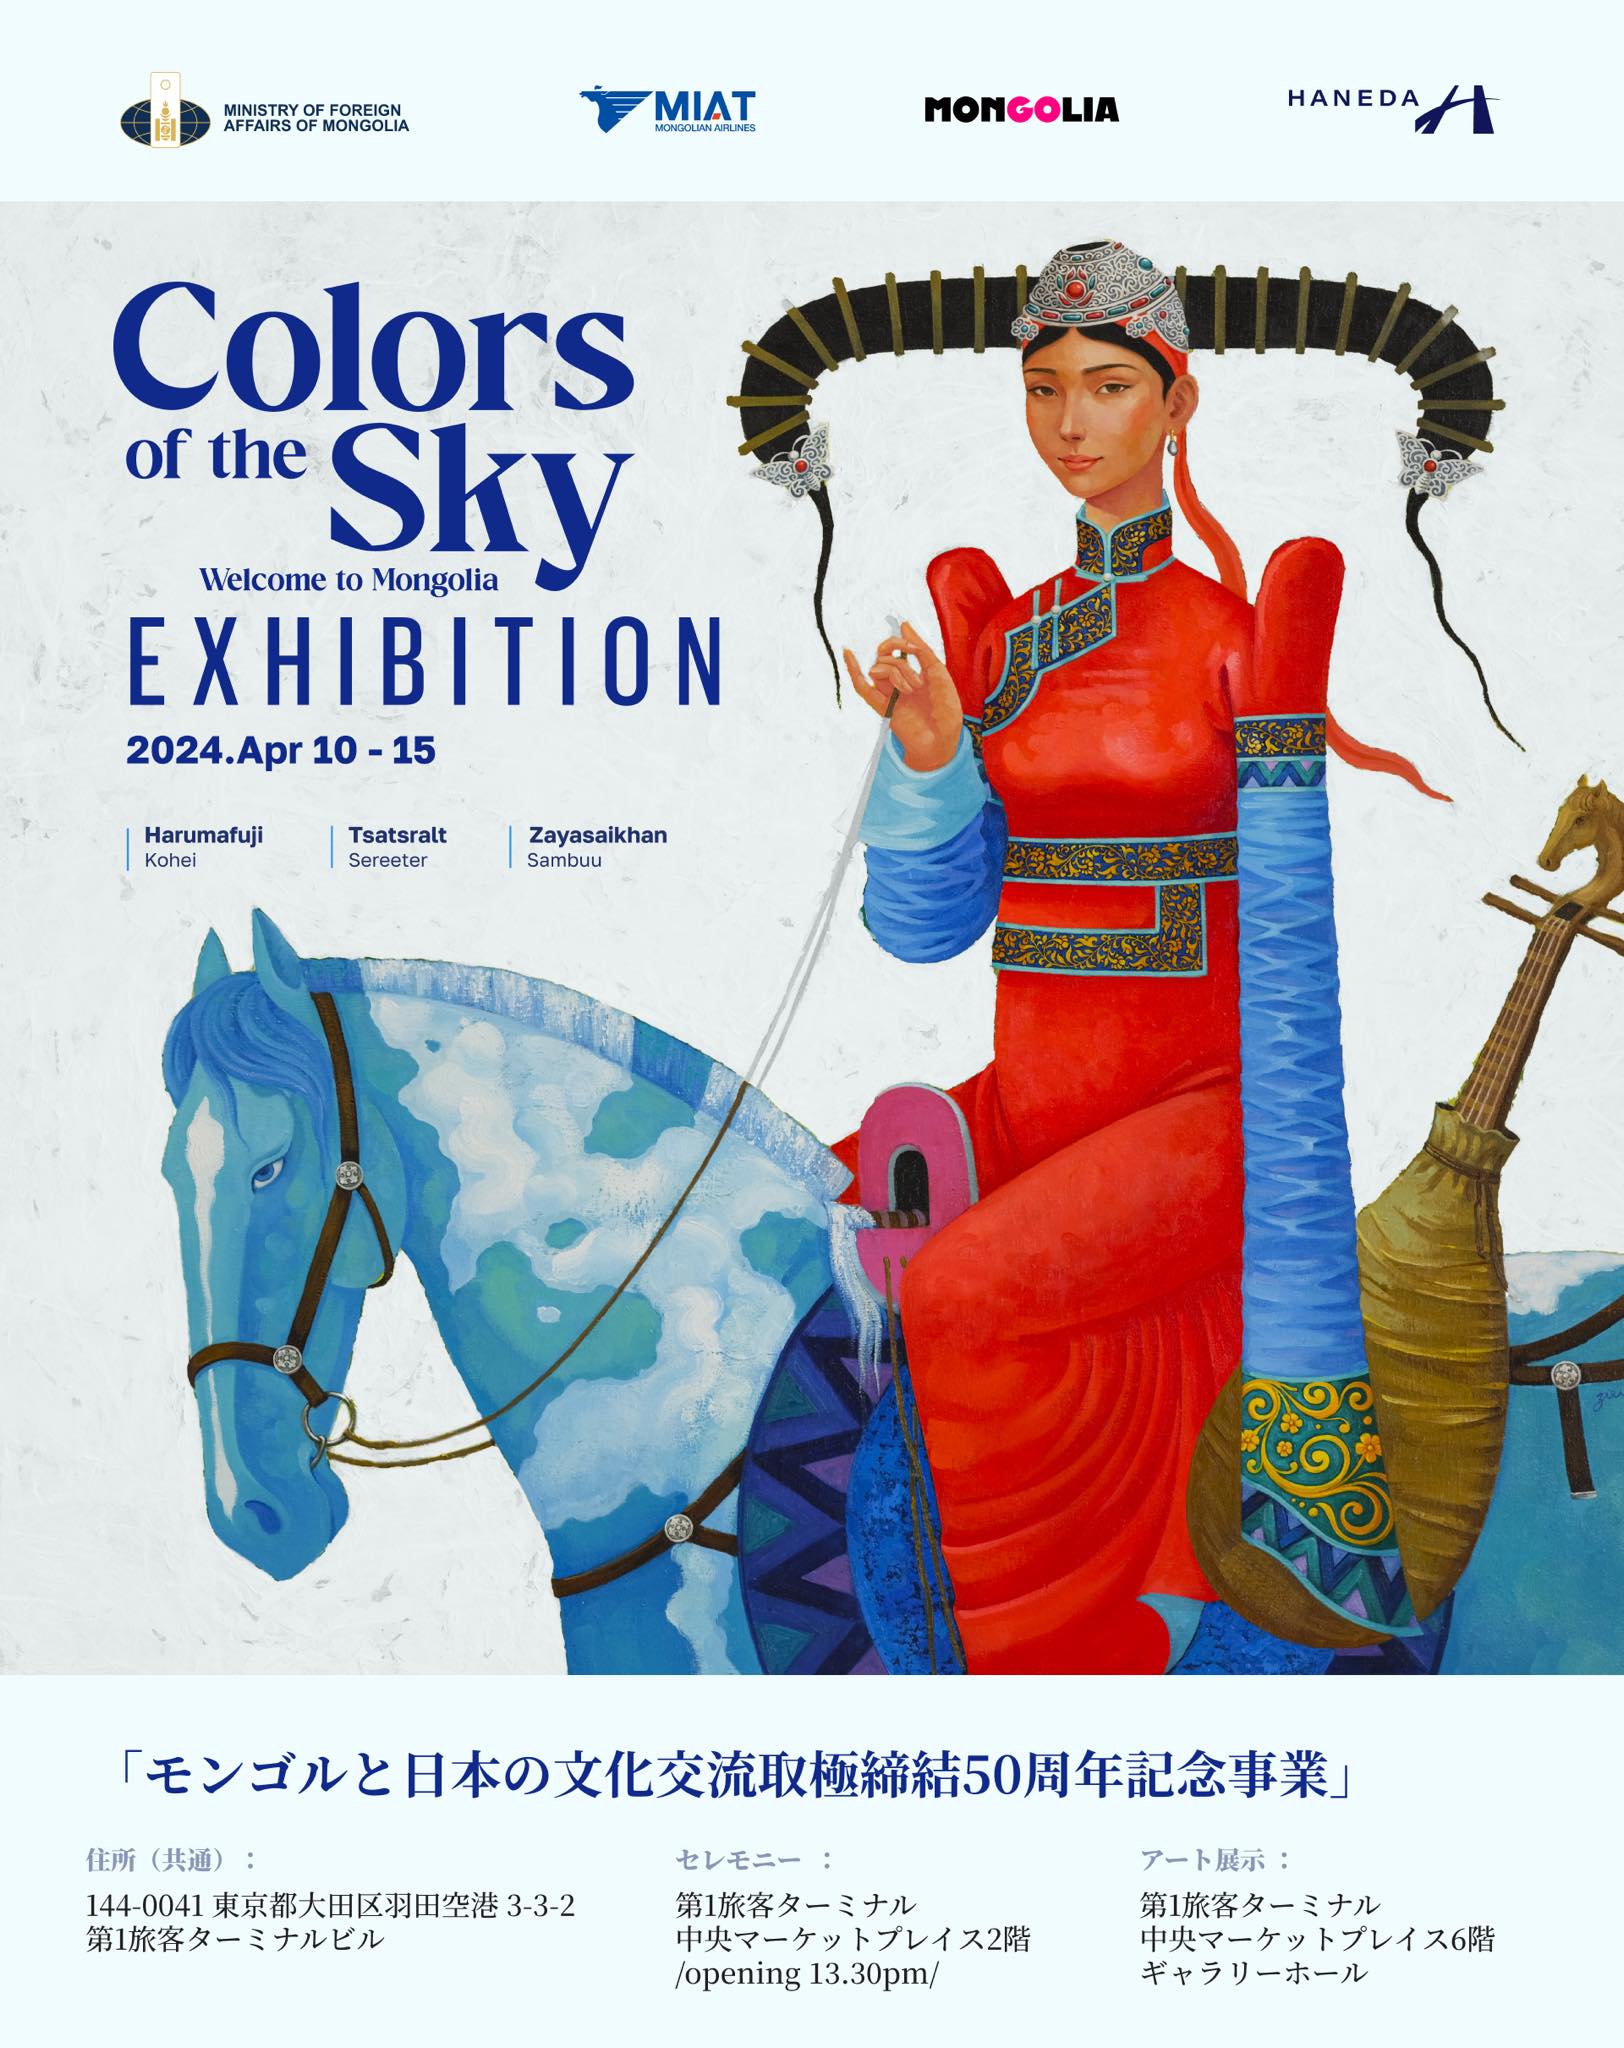 منغوليا واليابان:  ألوان السماء في 50 سنة